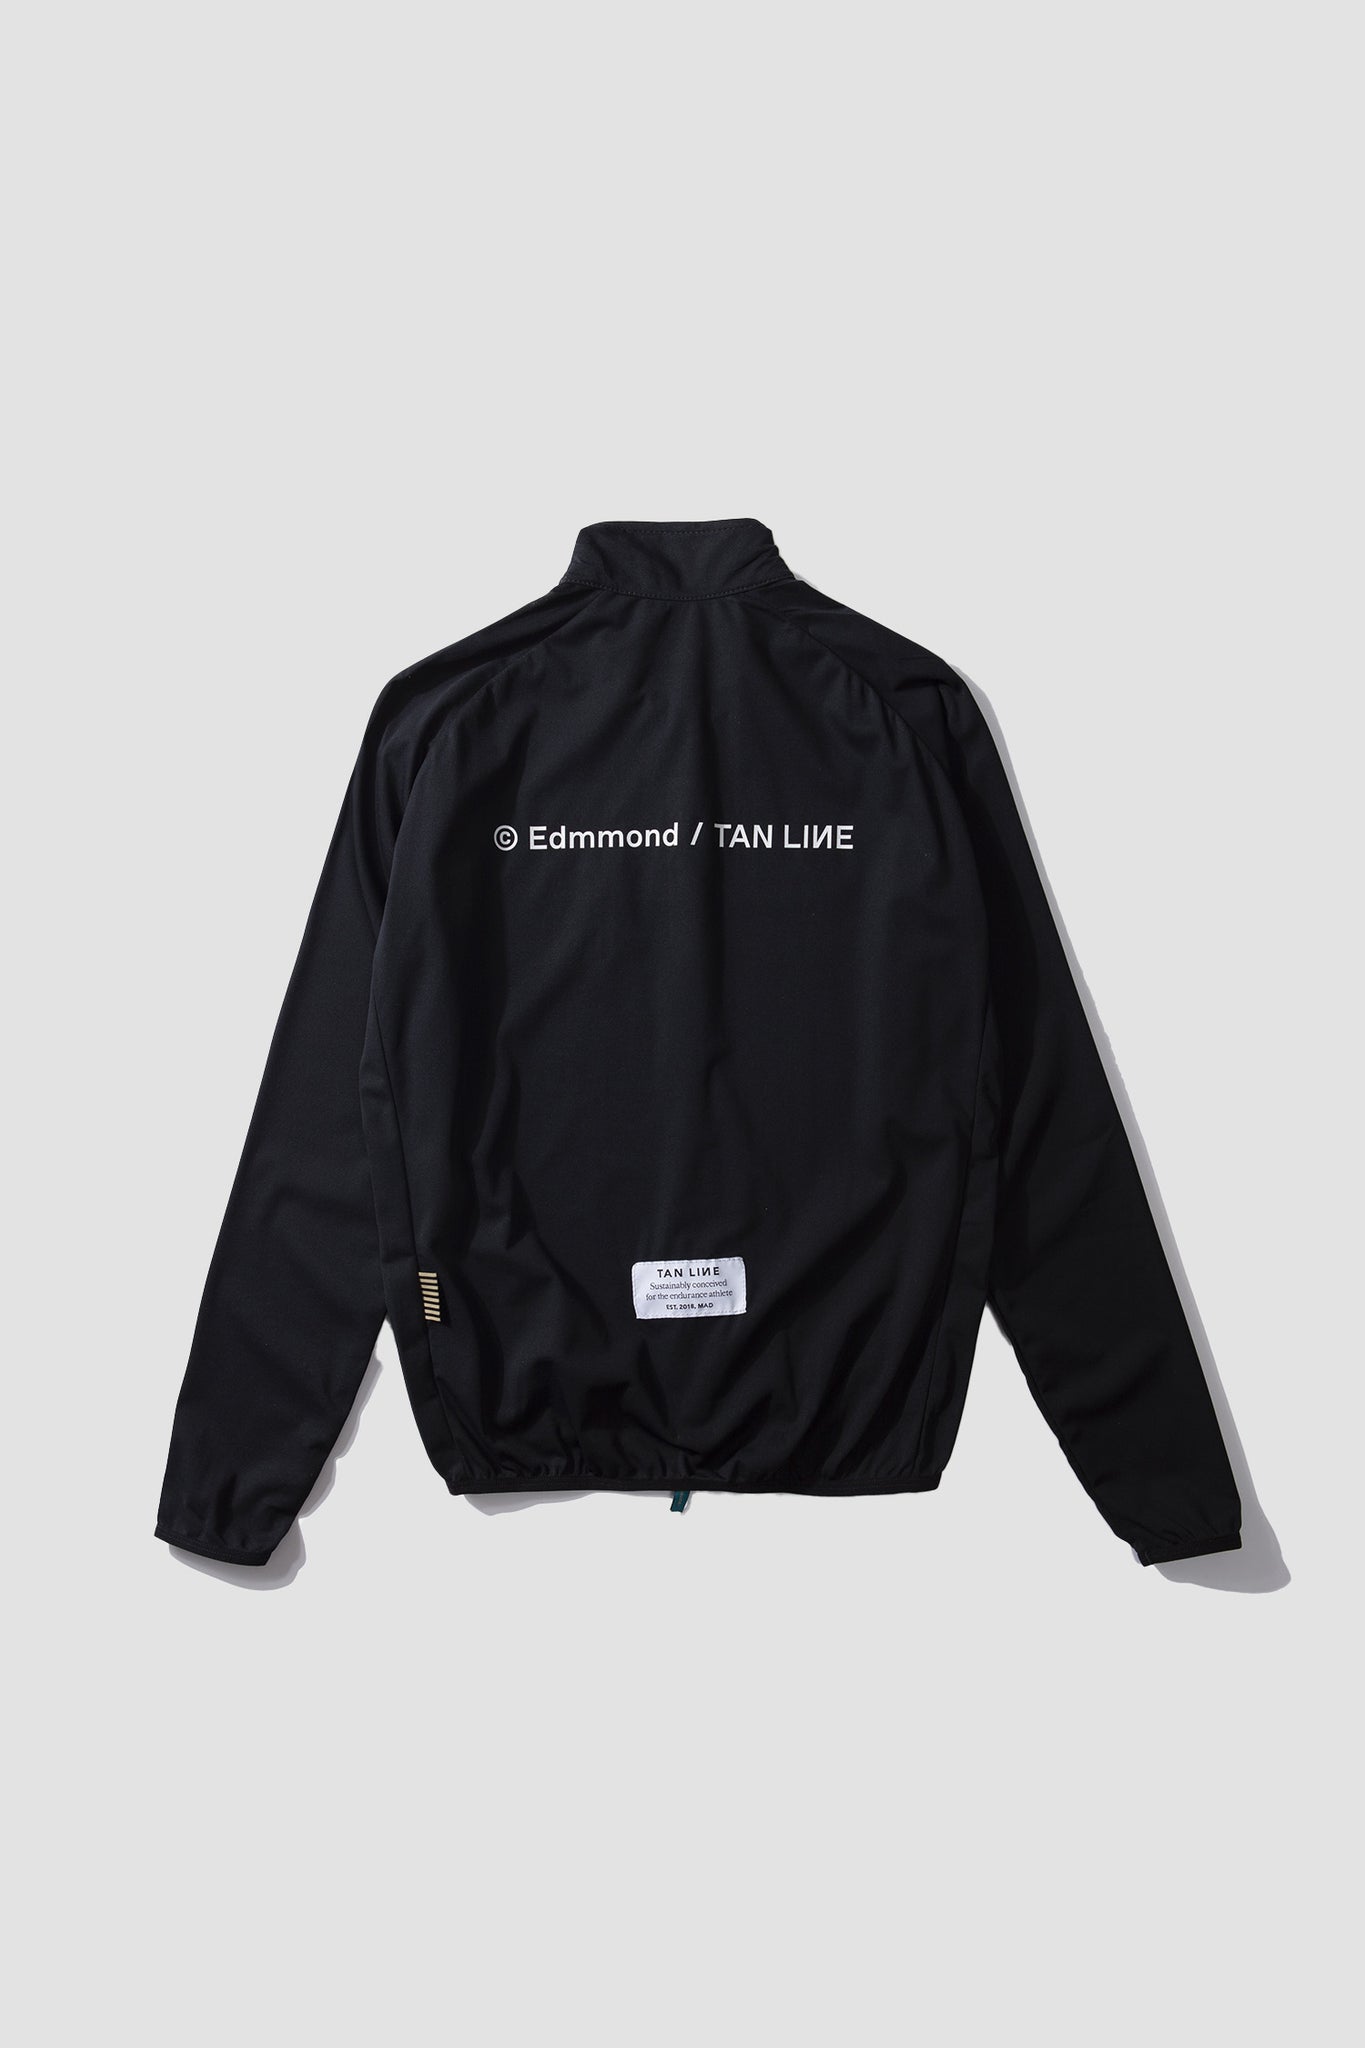 Edmmond & Tan Line Onoff jacket ~ Black